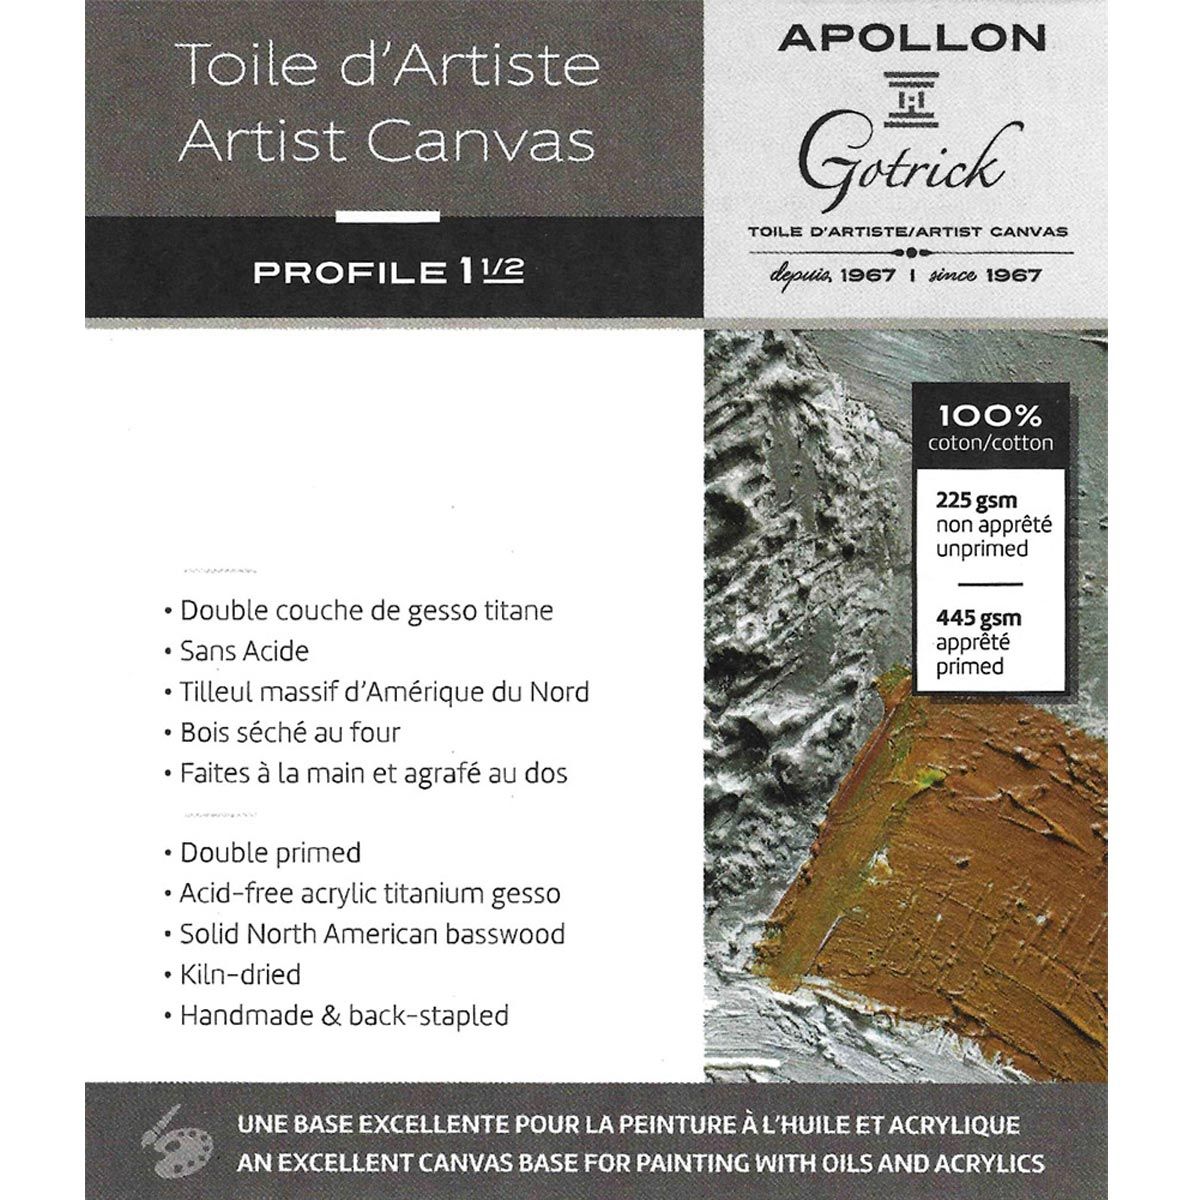 Apollon Gotrick Gallery Artist Canvas Profile 1½" - 20" x 24"